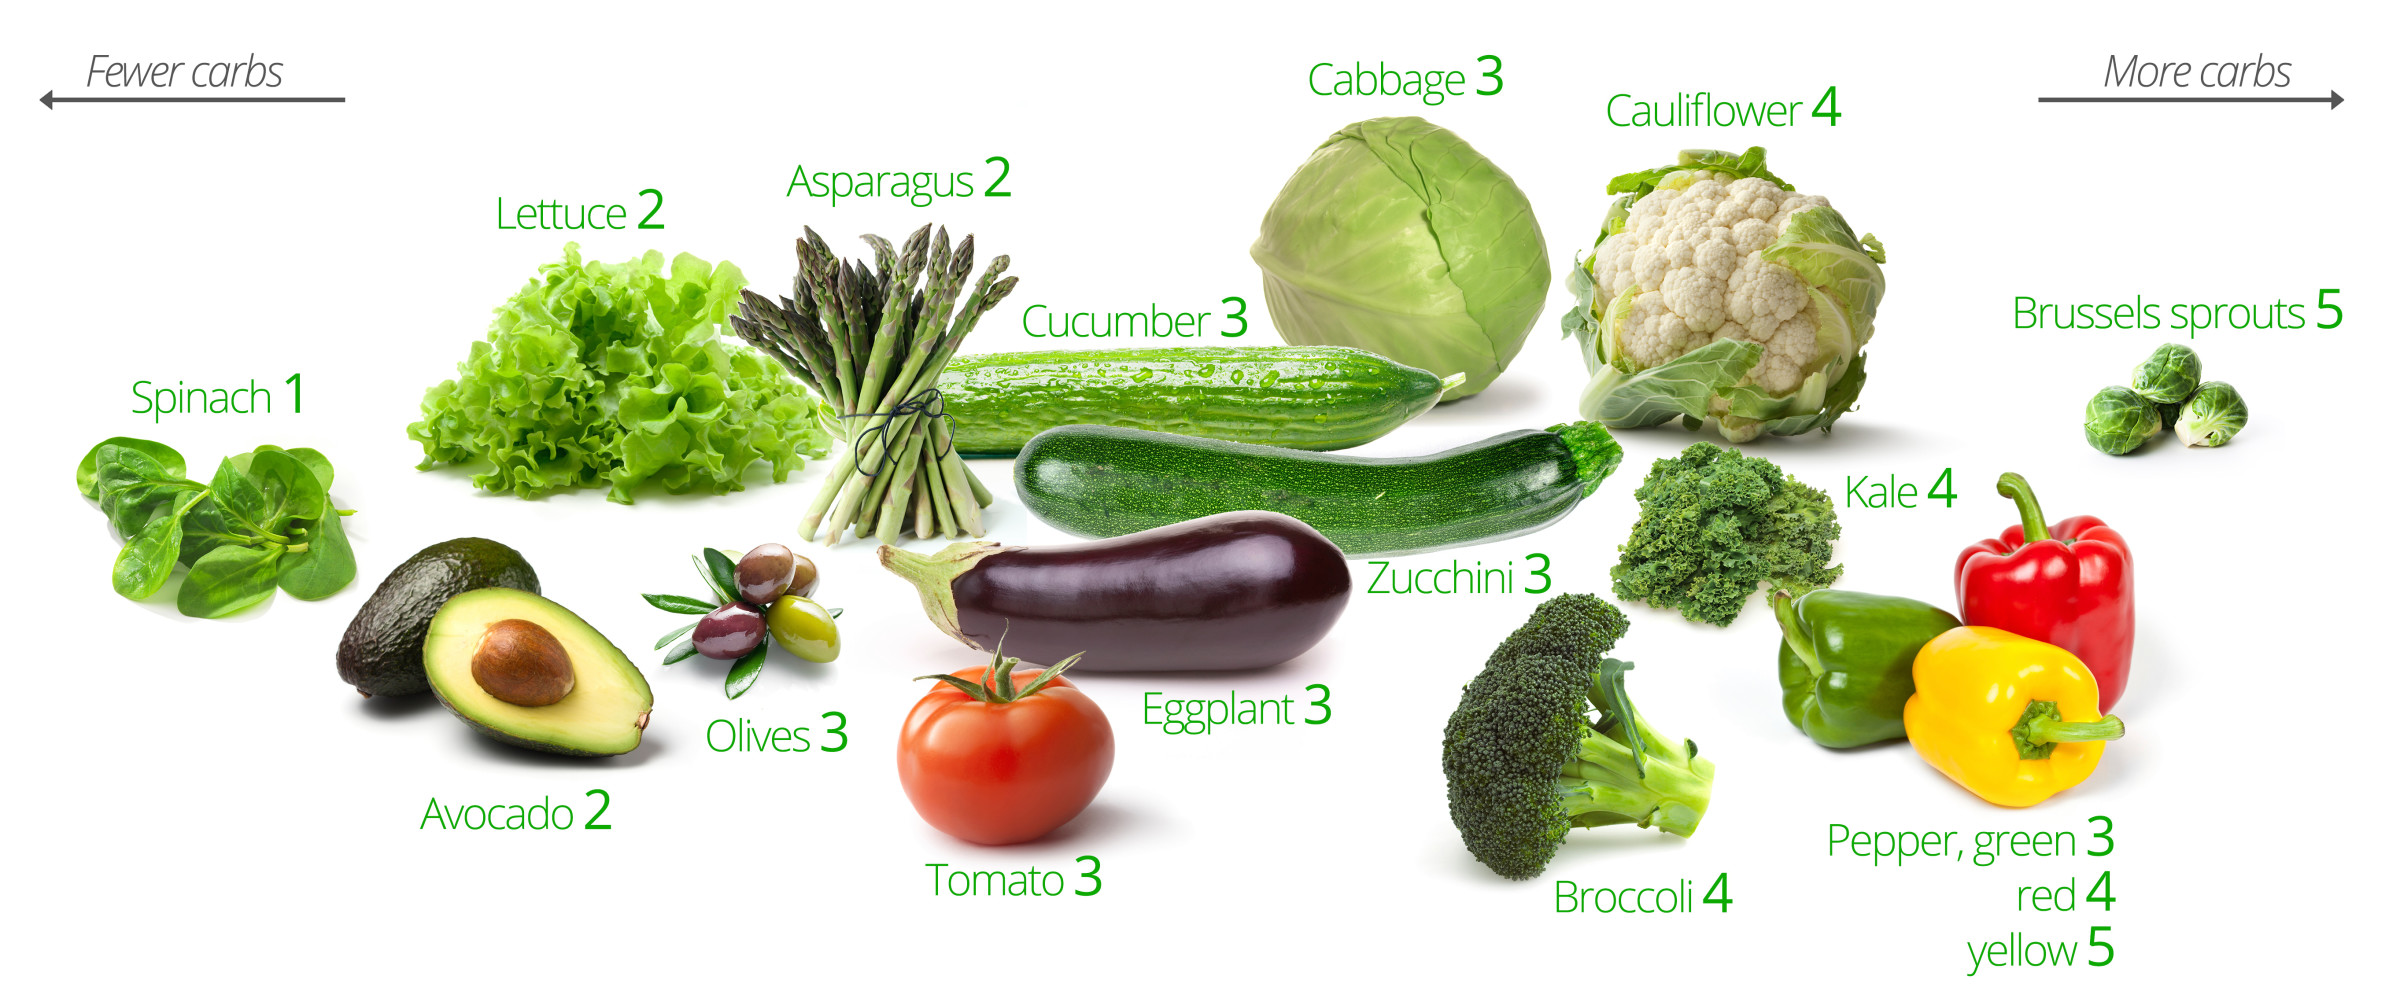 Kolhydrater i grönsaker – de bästa och de sämsta